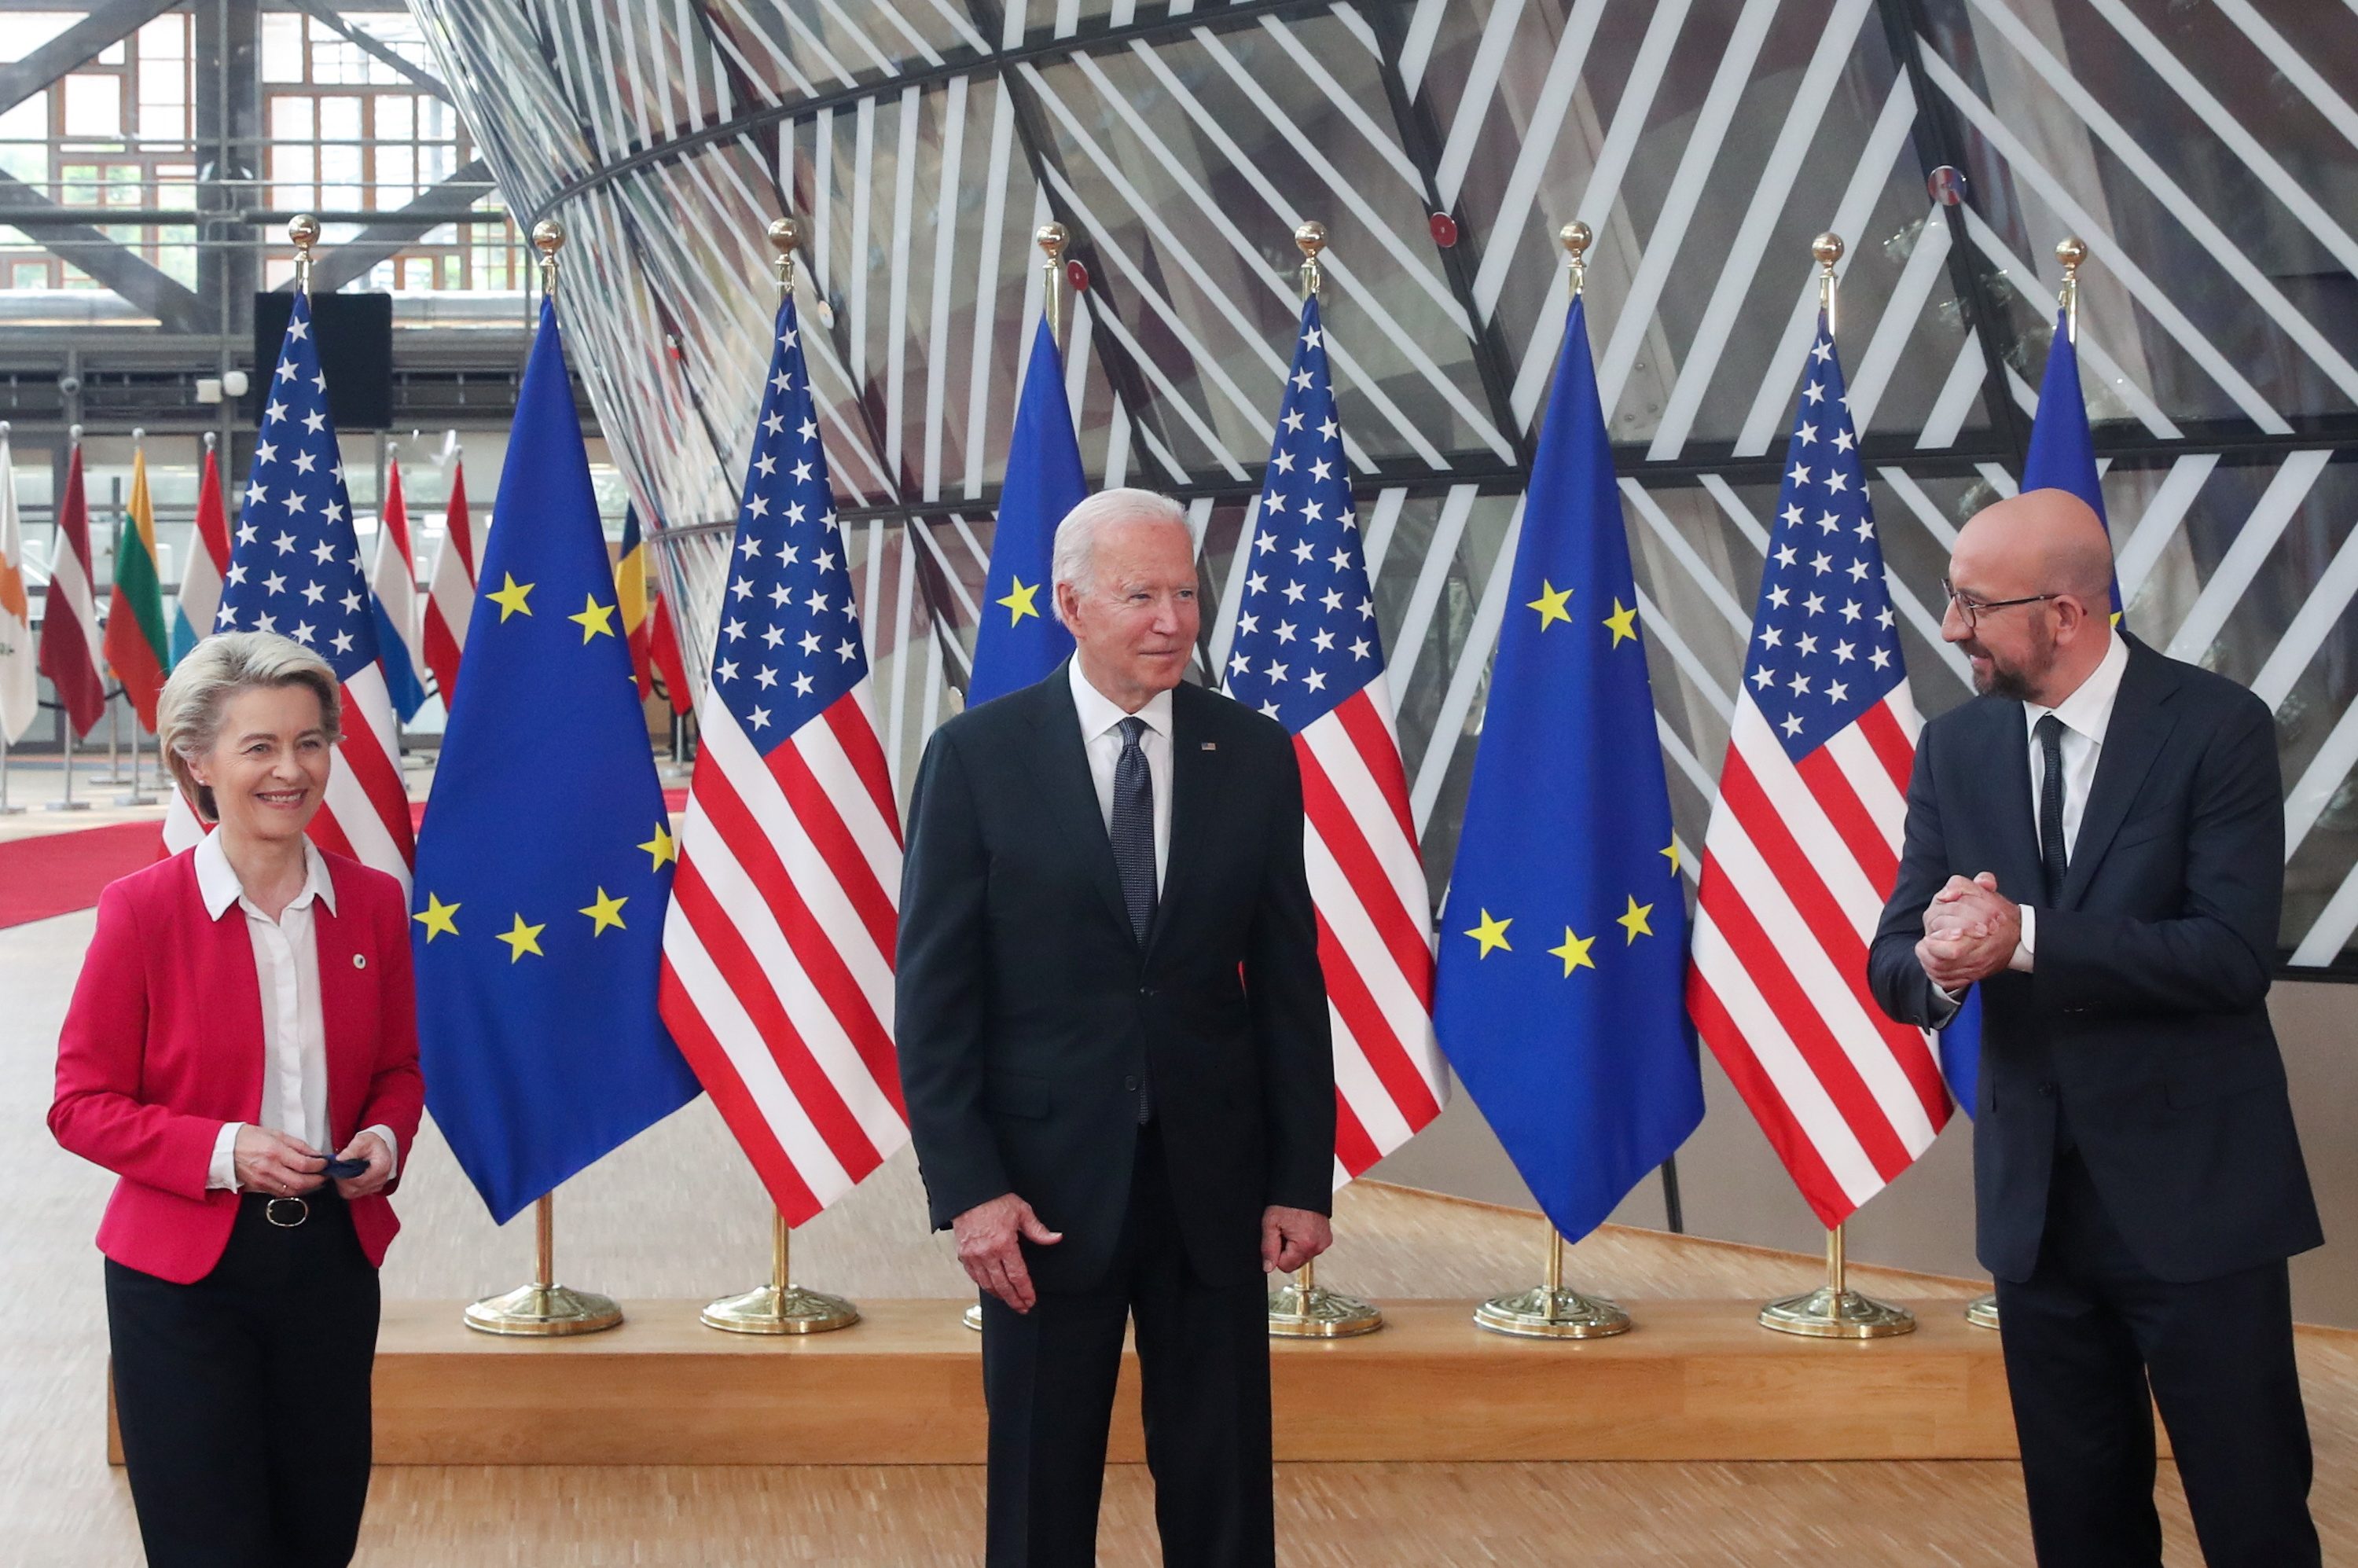 Quoting Irish poet, Biden ends EU trade war in renewal of transatlantic ties